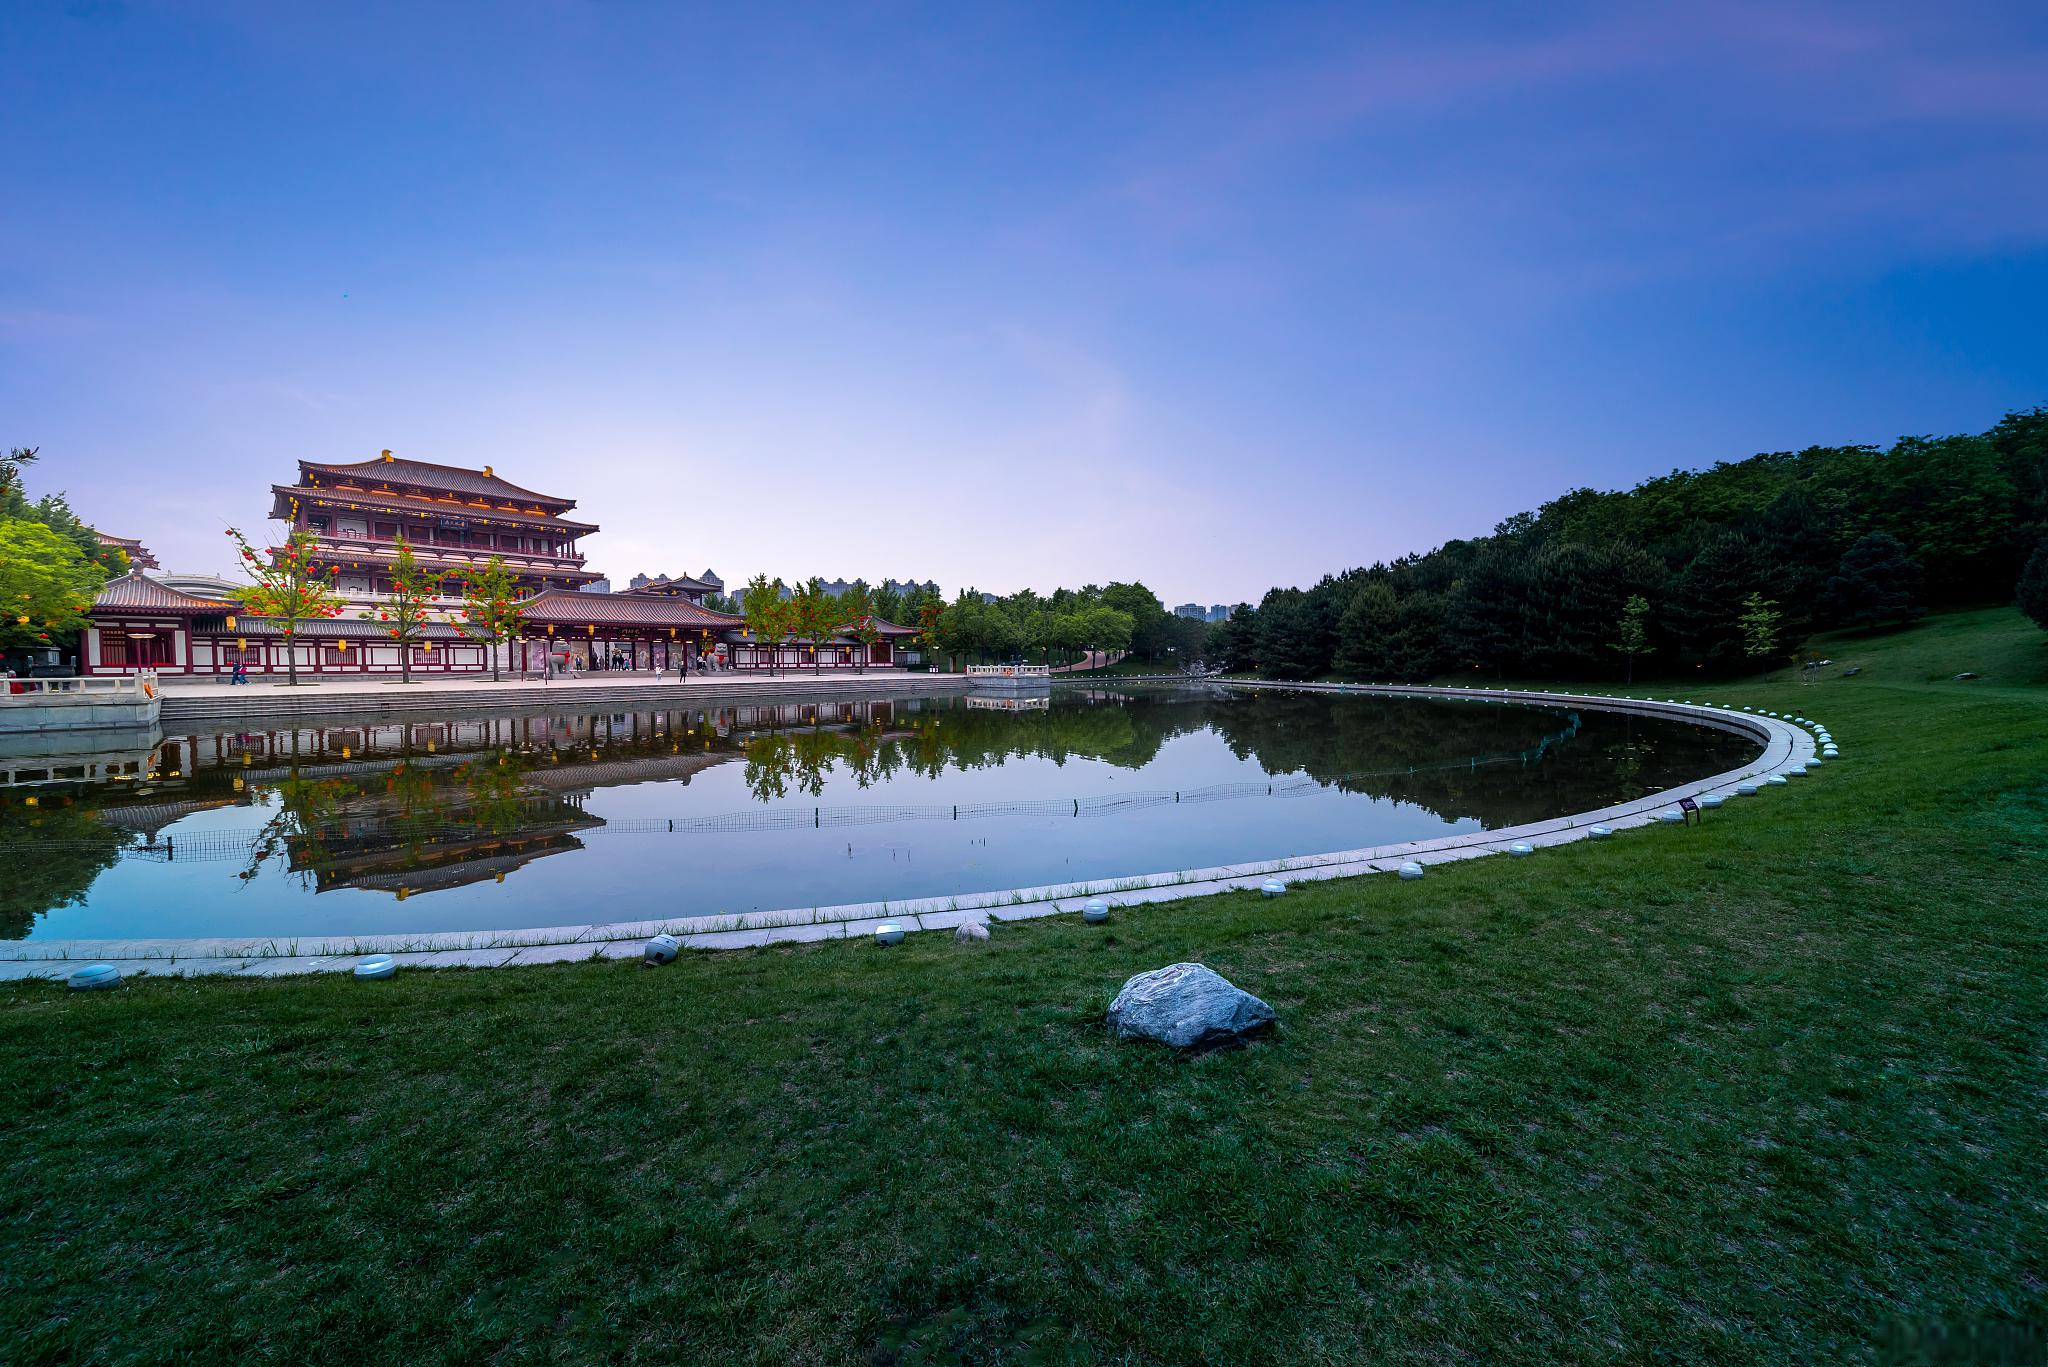 大唐芙蓉园景区 大唐芙蓉园景区位于中国陕西省西安市,是一座以唐代